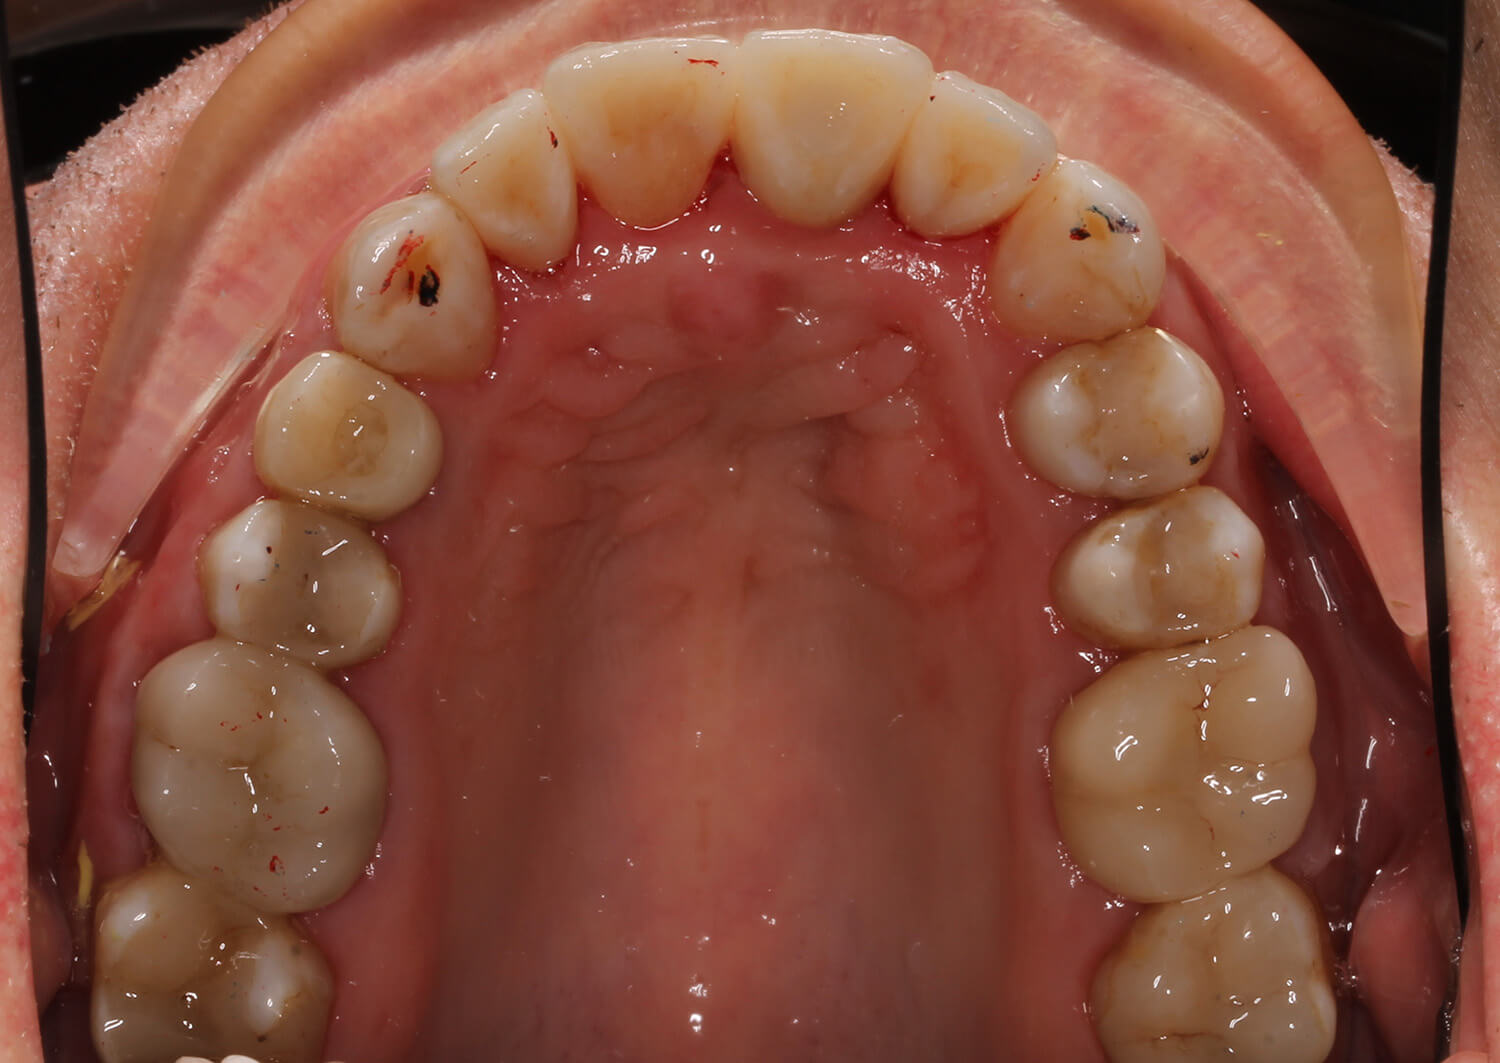 Плохие зубы: истории из жизни, советы, новости, юмор и картинки — Все посты | Пикабу